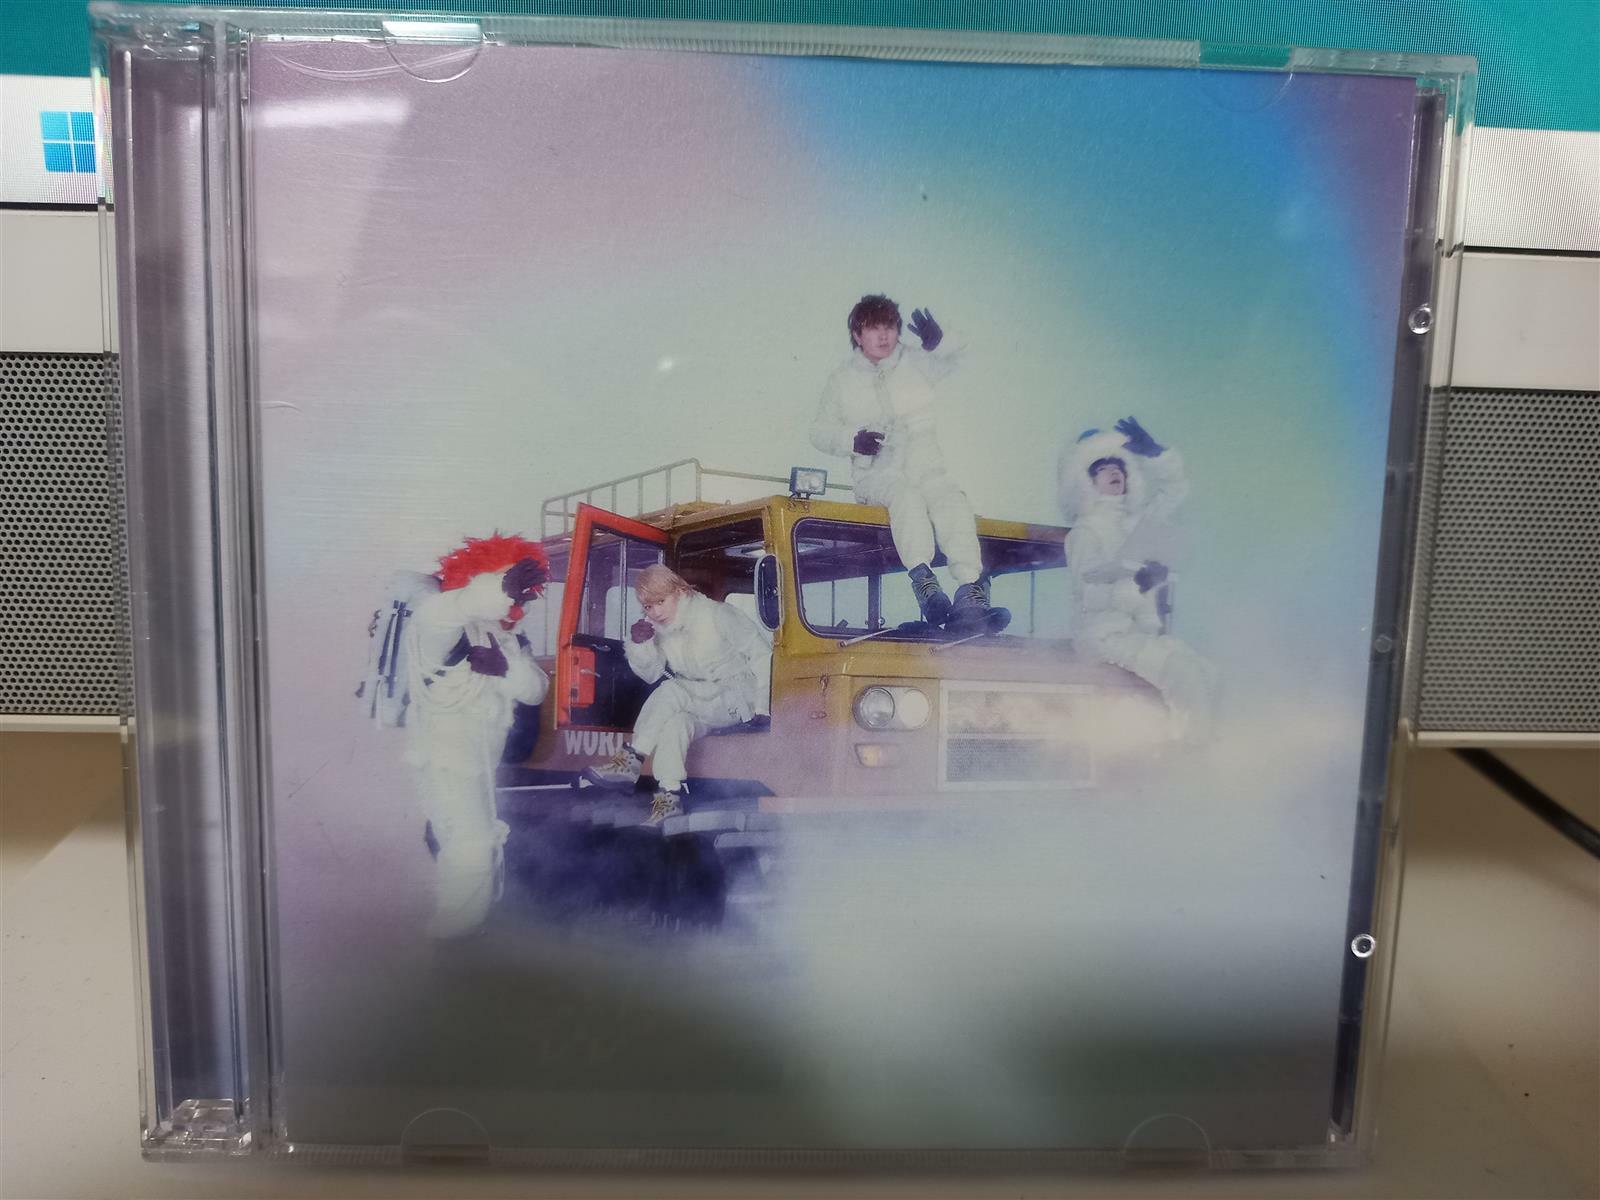 [중고] Sekai No Owari ^SOS/Present^ CD+DVD...M M/M...일본반...Toy‘s Factory반...